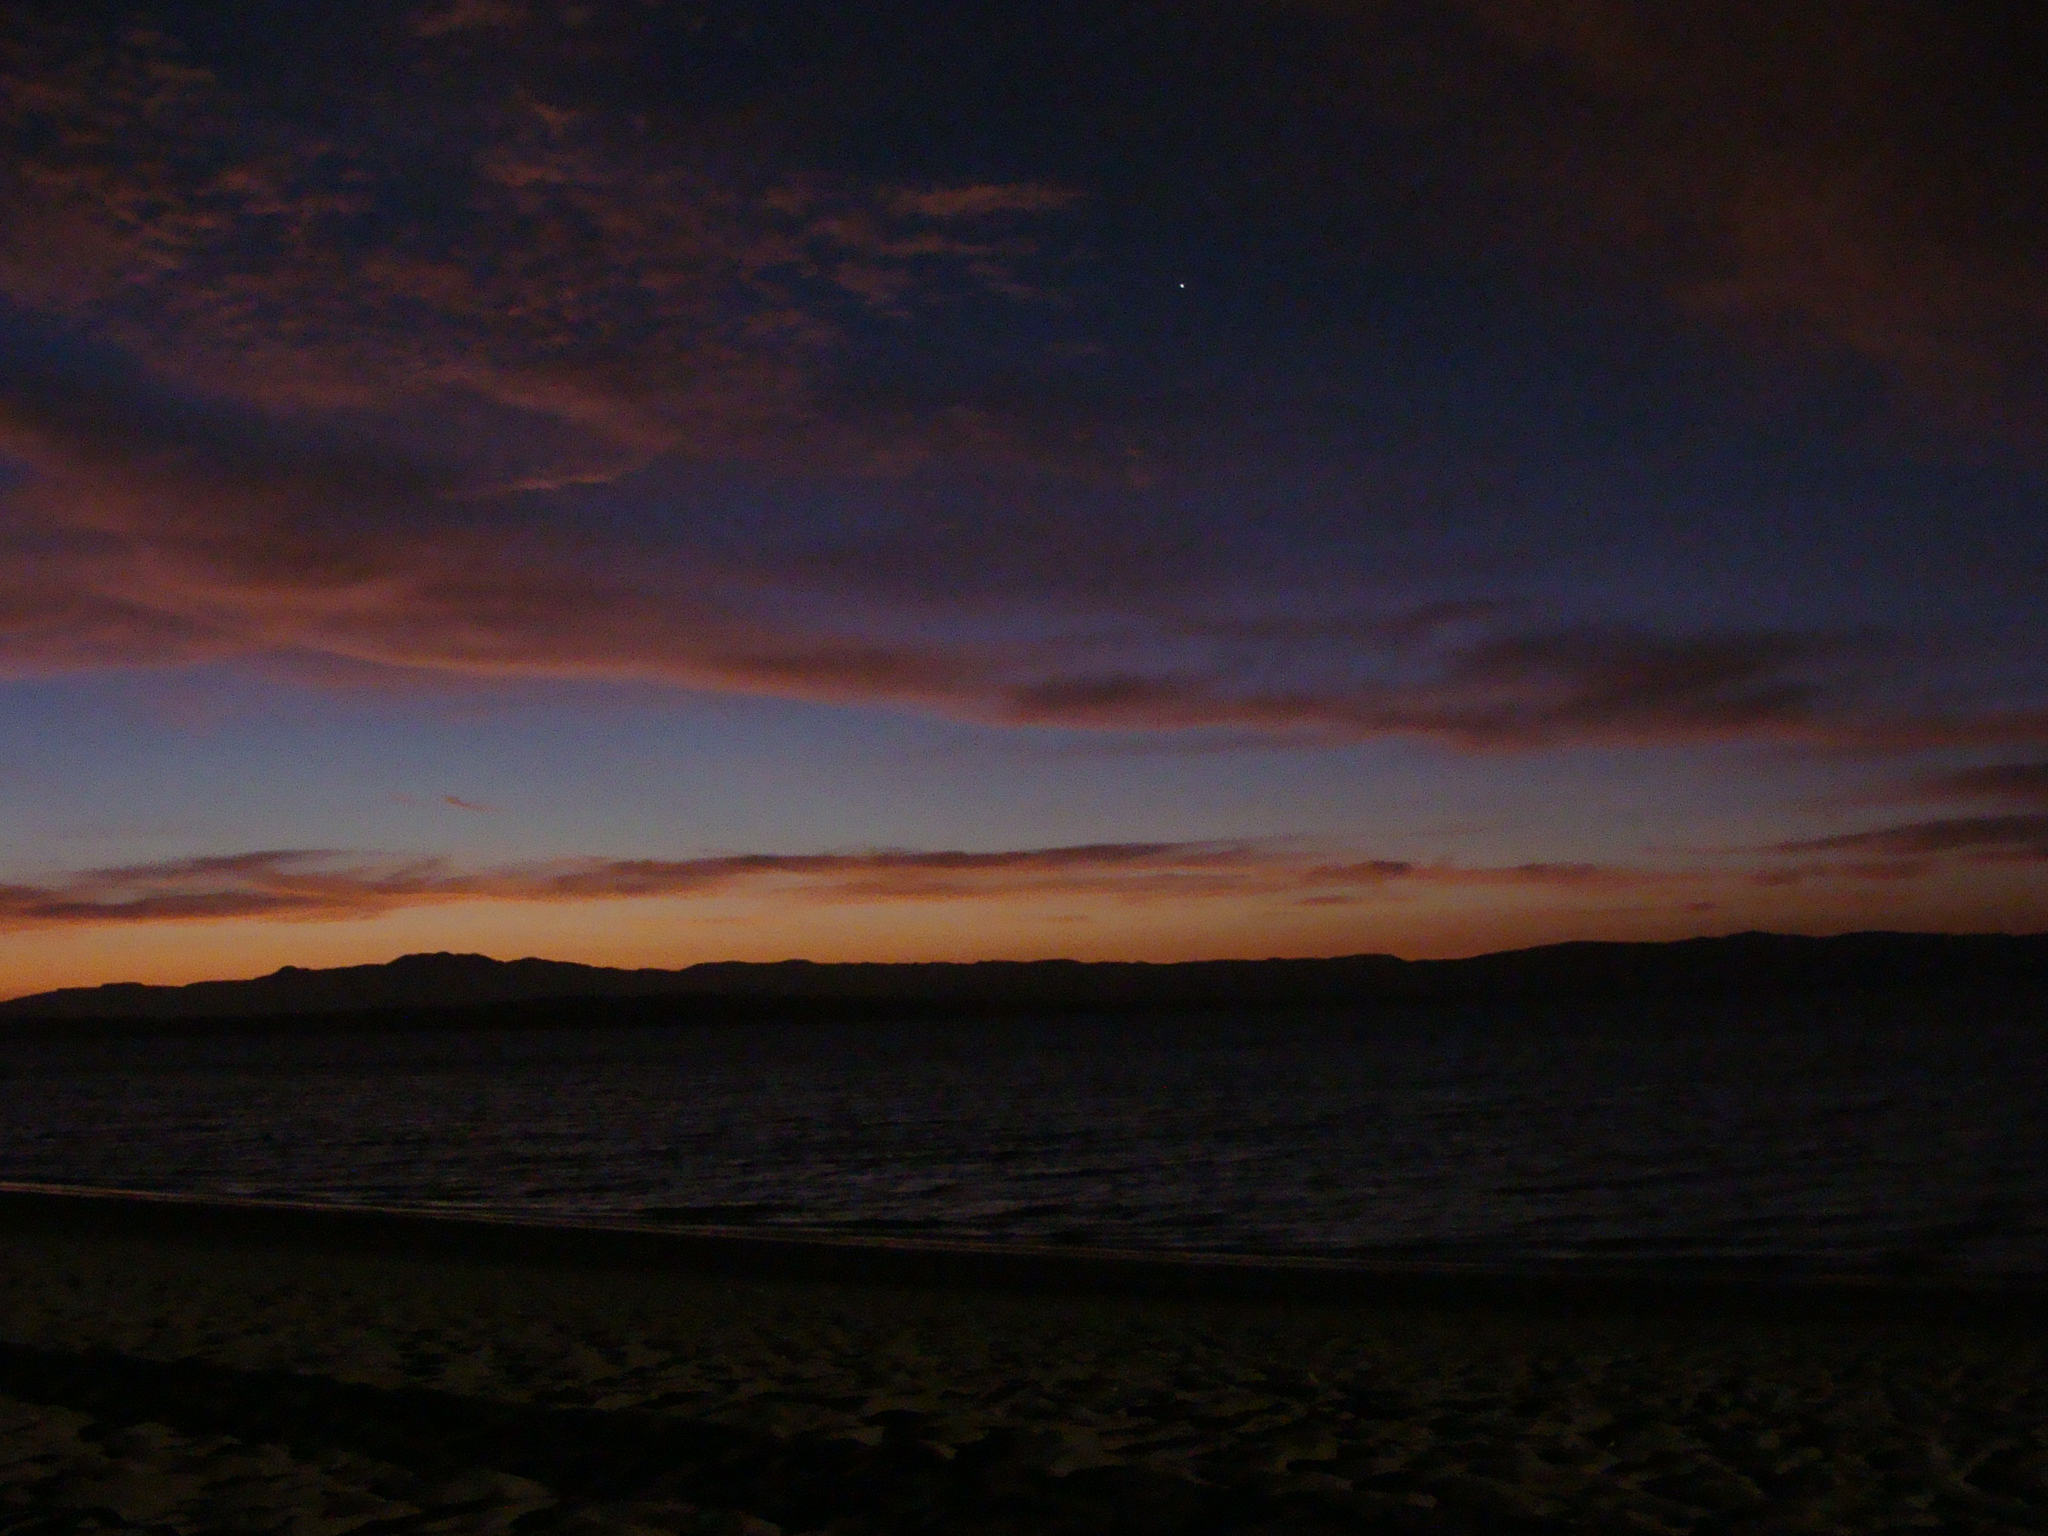 Západ slunce v paracaskem zálivu s první hvězdou Canopus ze souhvězdí Carina - lodní kýl 21. 2. 2011 19:07